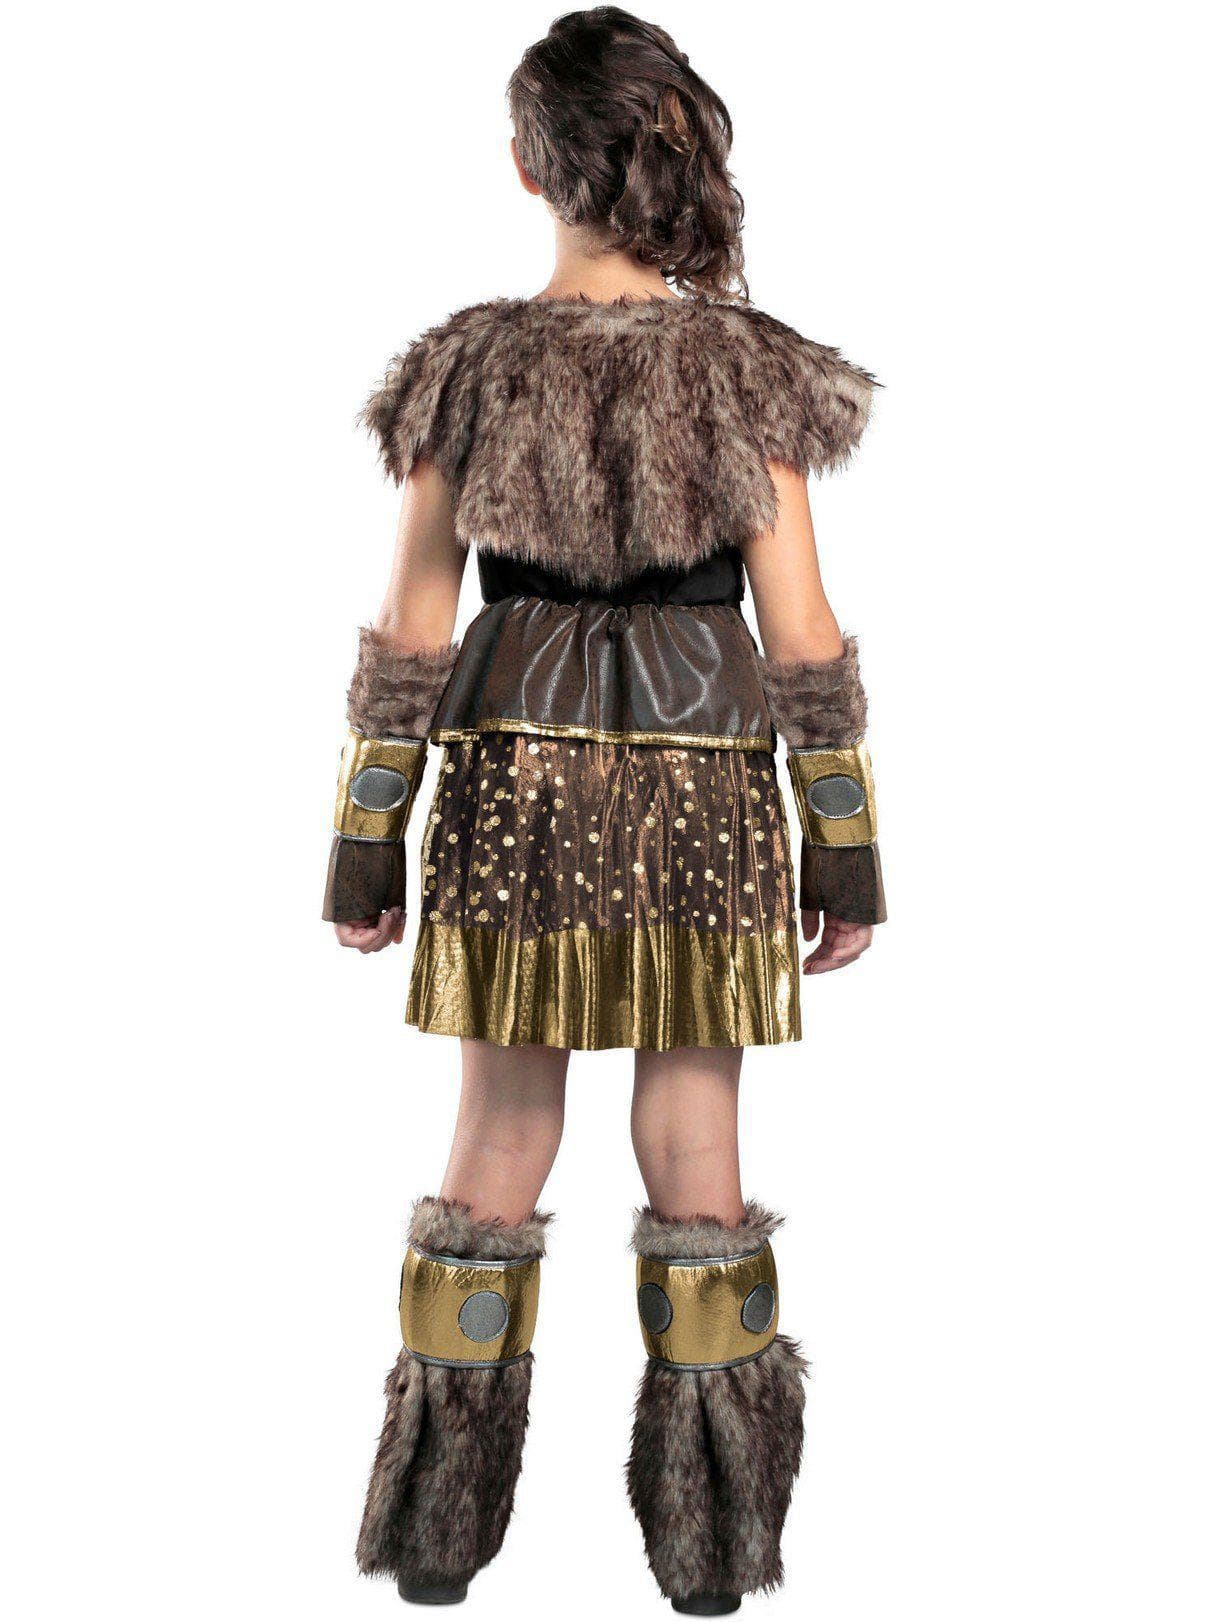 Adult Hildegard Costume - costumes.com